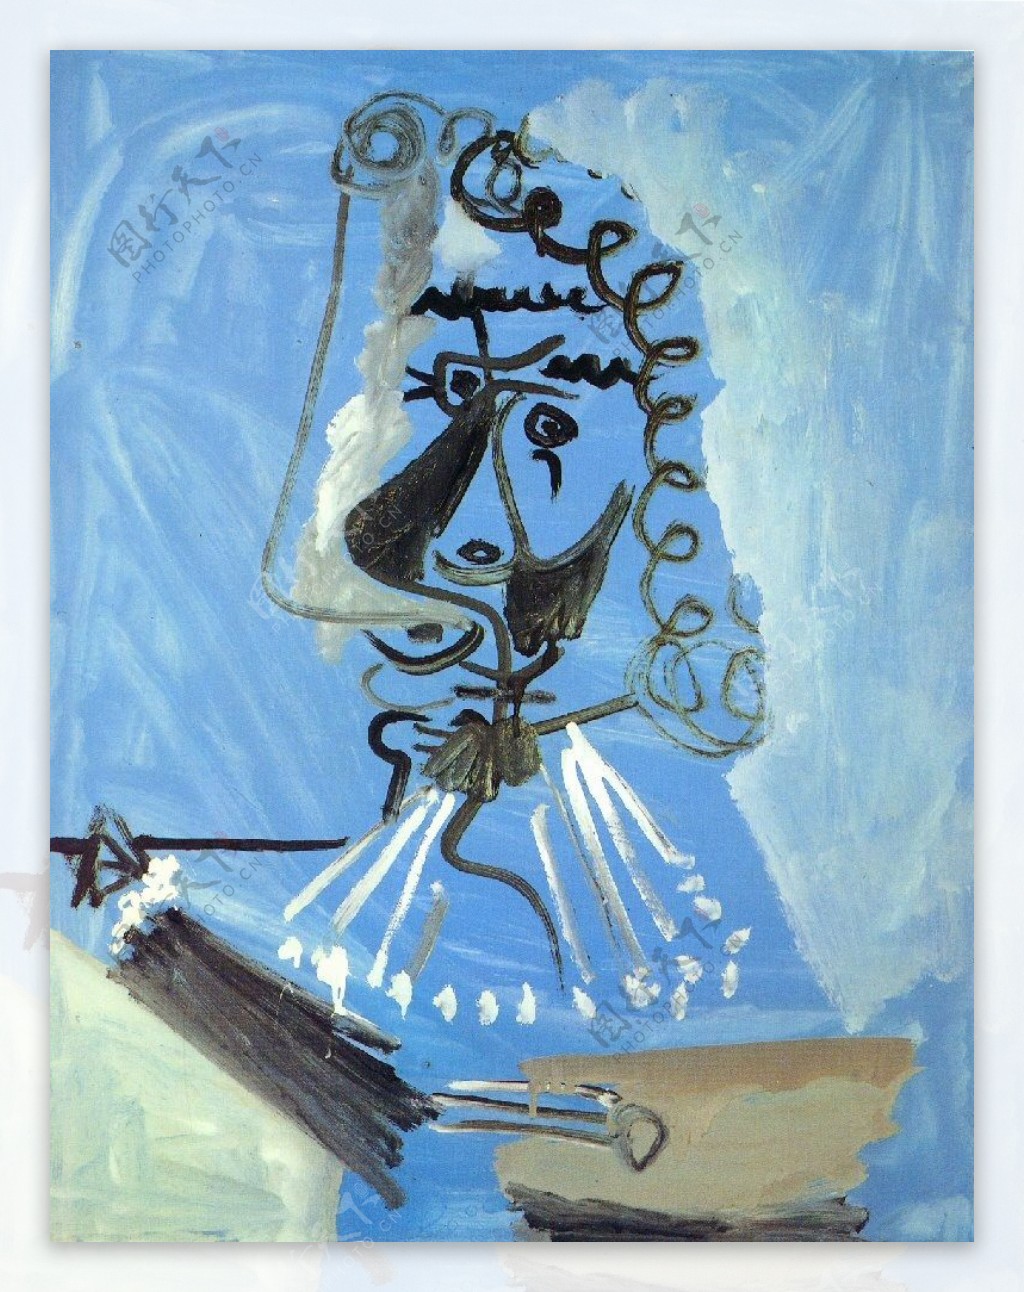 1967Lepeintre2西班牙画家巴勃罗毕加索抽象油画人物人体油画装饰画